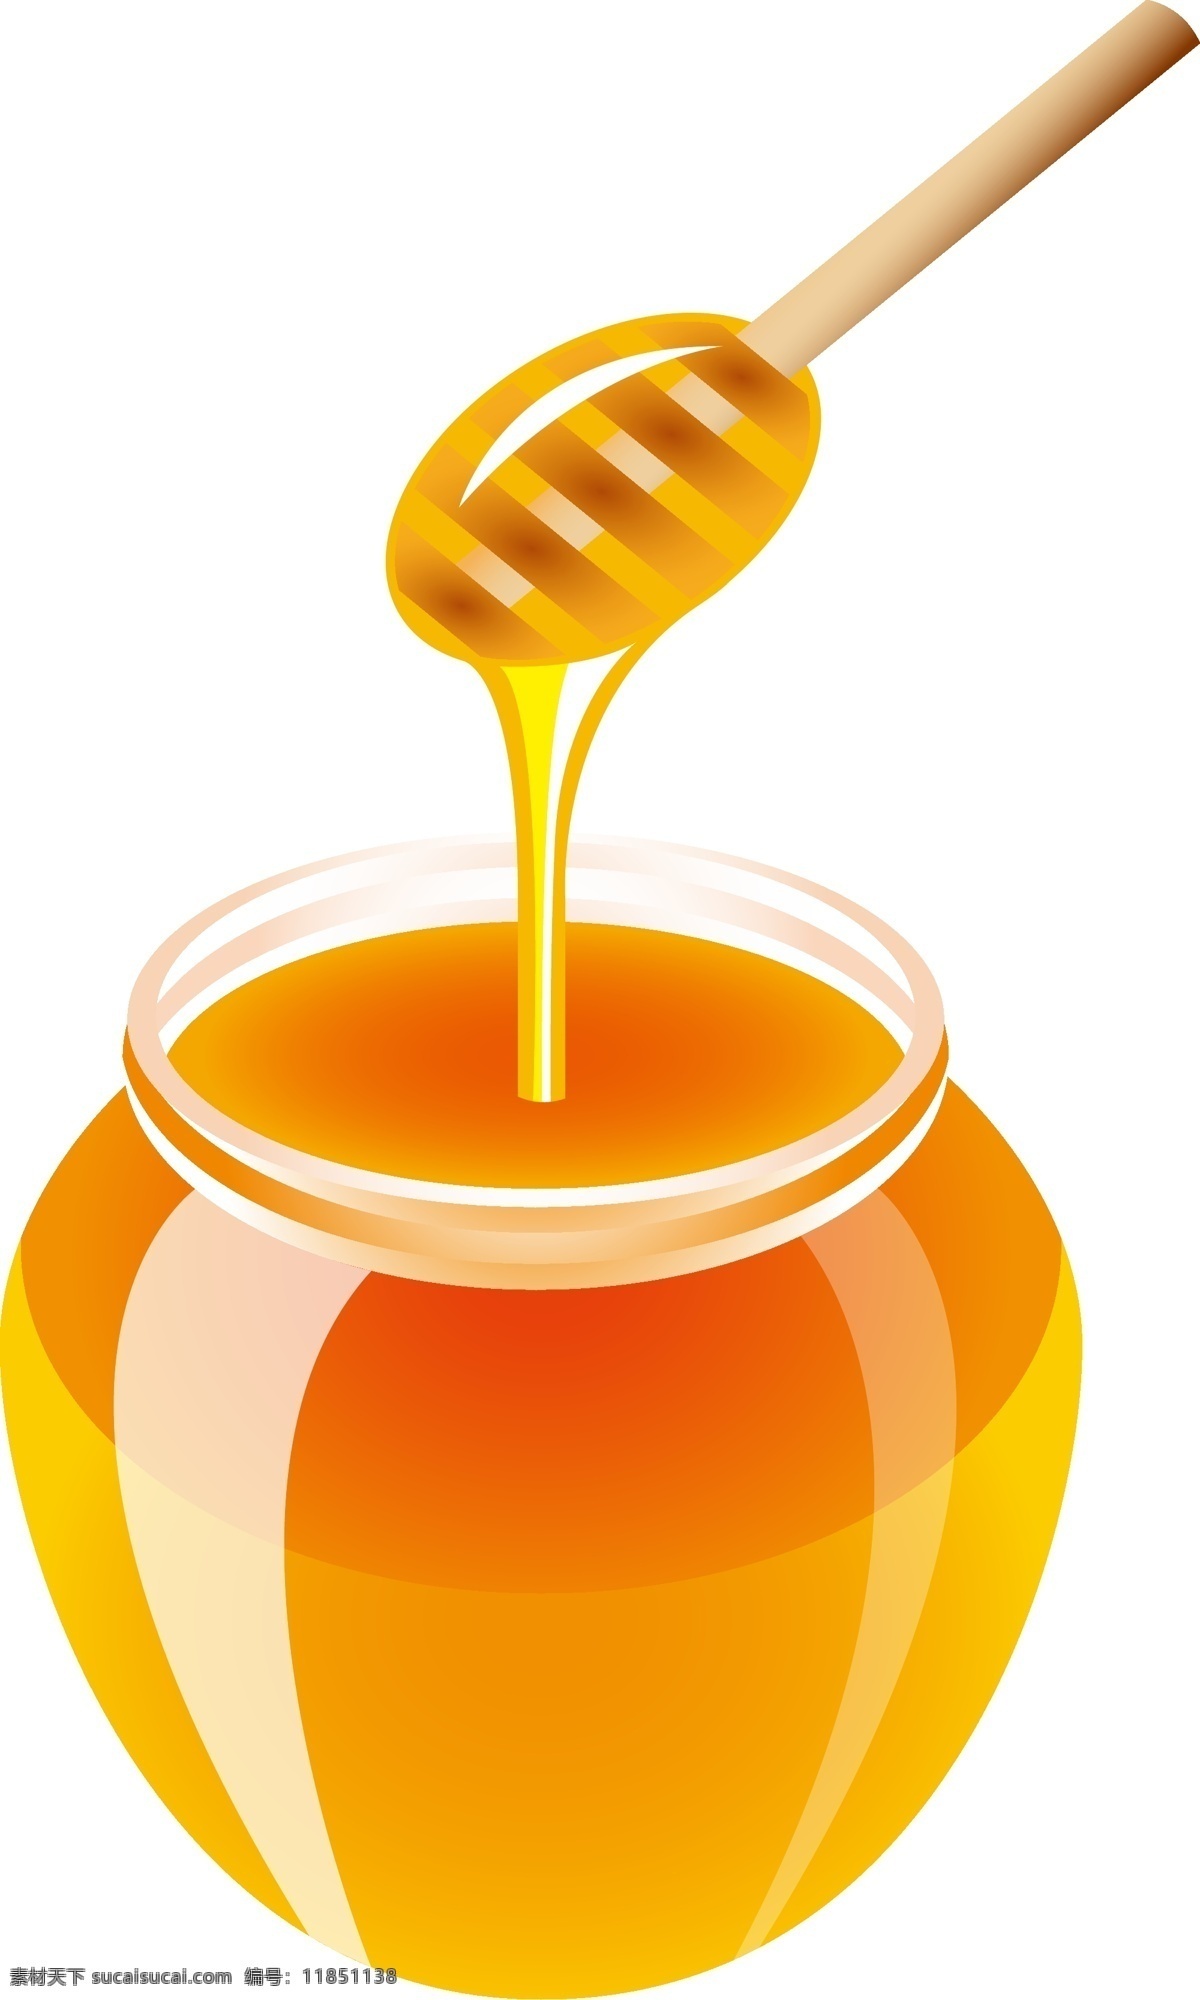 天然 无 添加 纯 蜂蜜 矢量图 无添加 营养 透明元素 ai元素 免抠元素